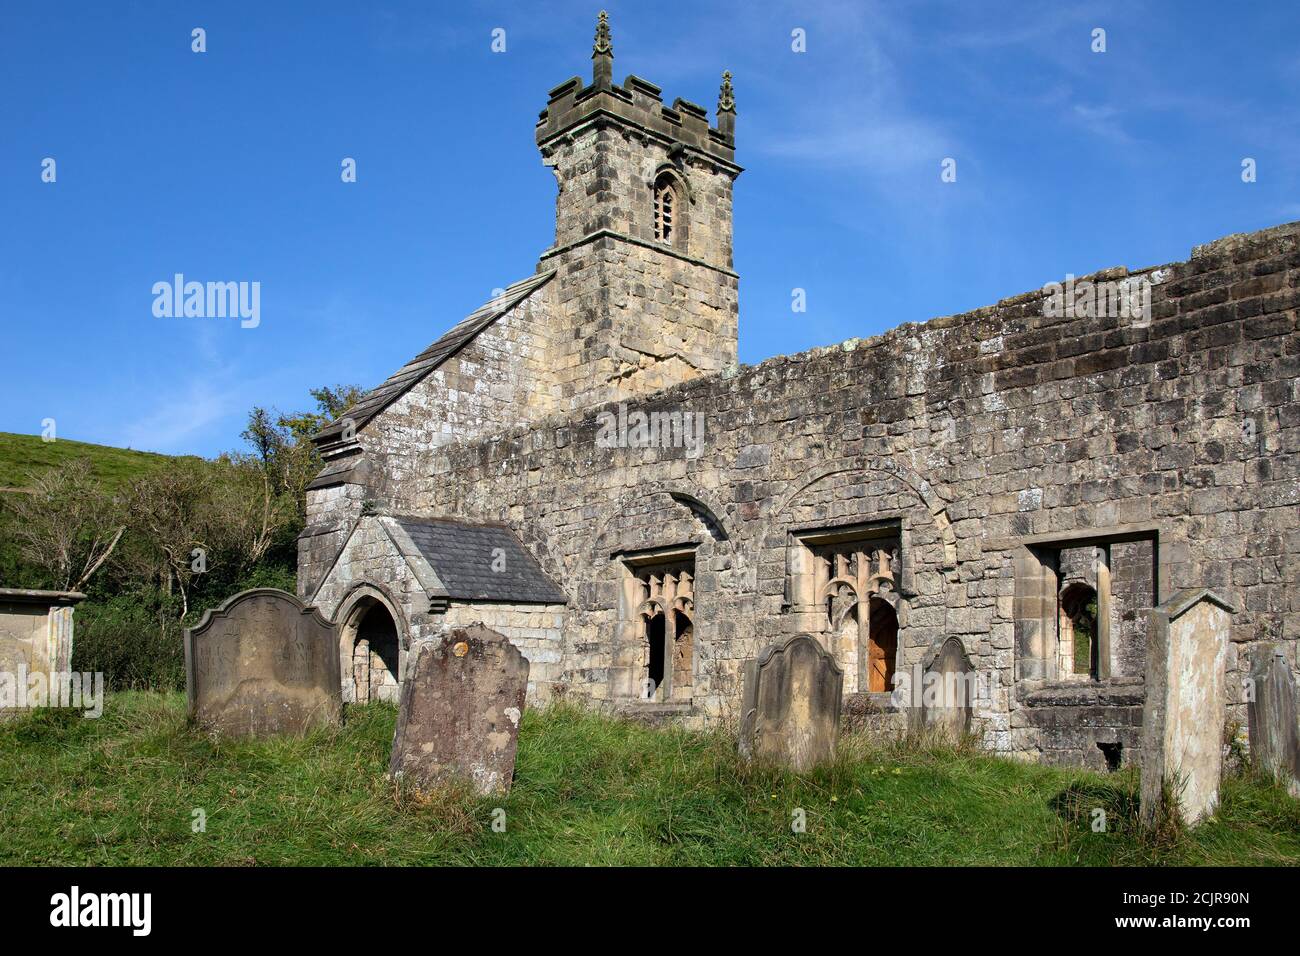 Ruines de l'église médiévale de St Martins à Wharram Percy dans le Yorkshire du Nord au Royaume-Uni. Le site date de la fin du XIIe siècle. Banque D'Images